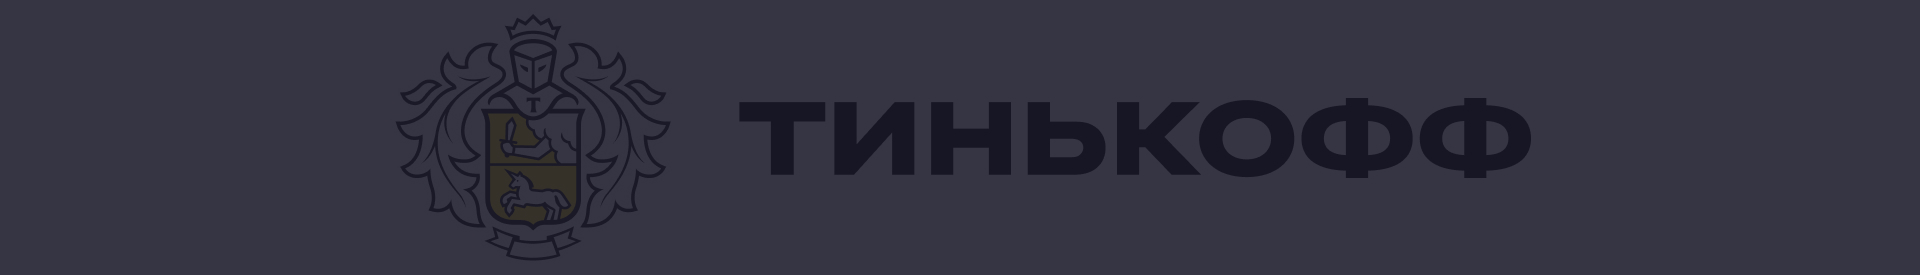 Акции и спецпредложения в банке Тинькофф в Нижнем Новгороде